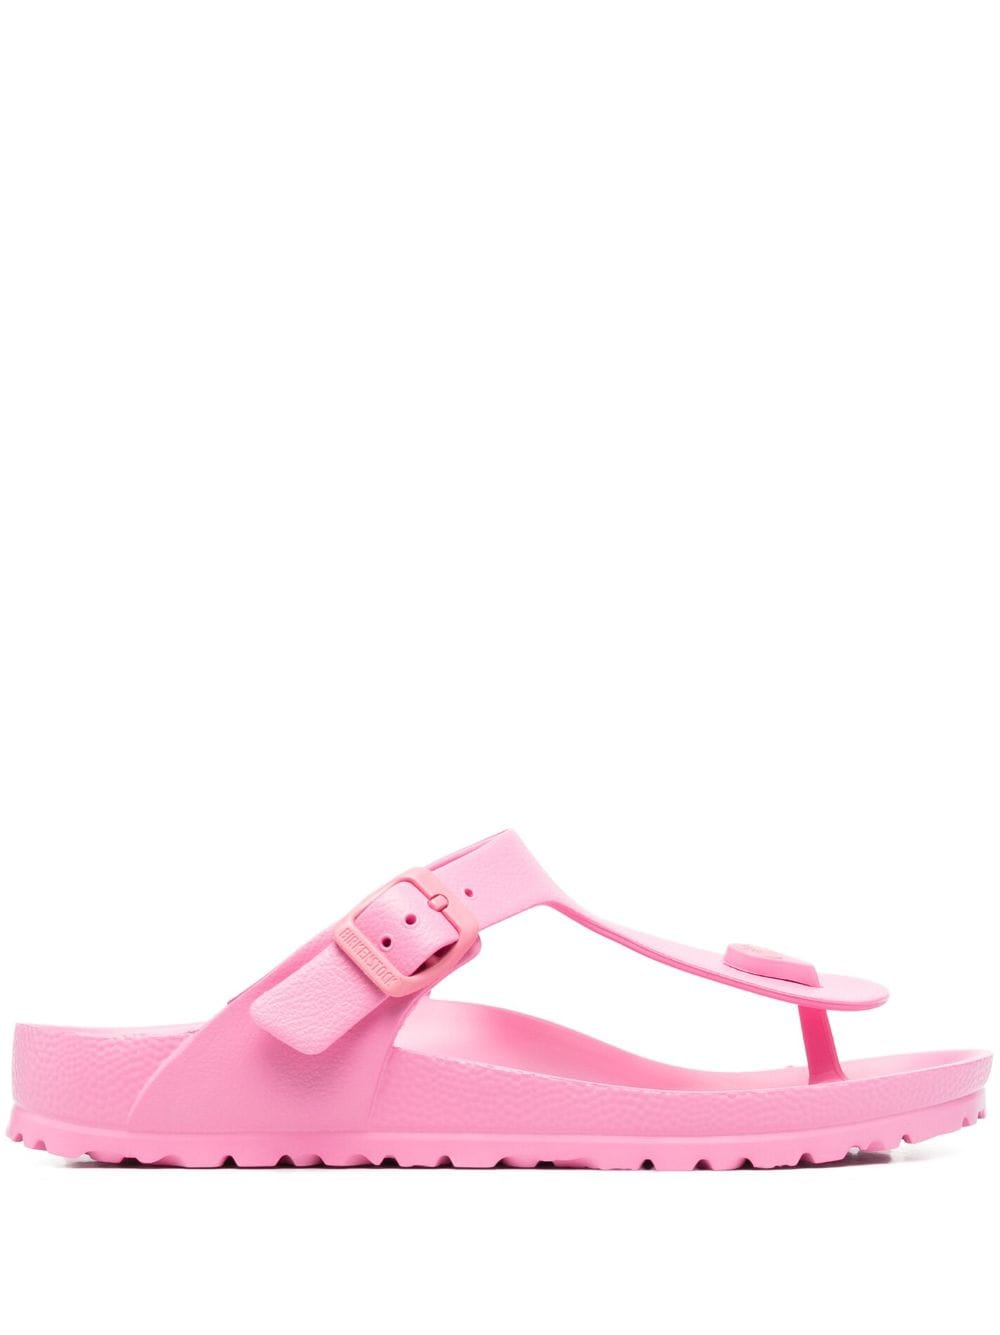 Birkenstock Gizeh Eva Thong Sandals In Pink | ModeSens